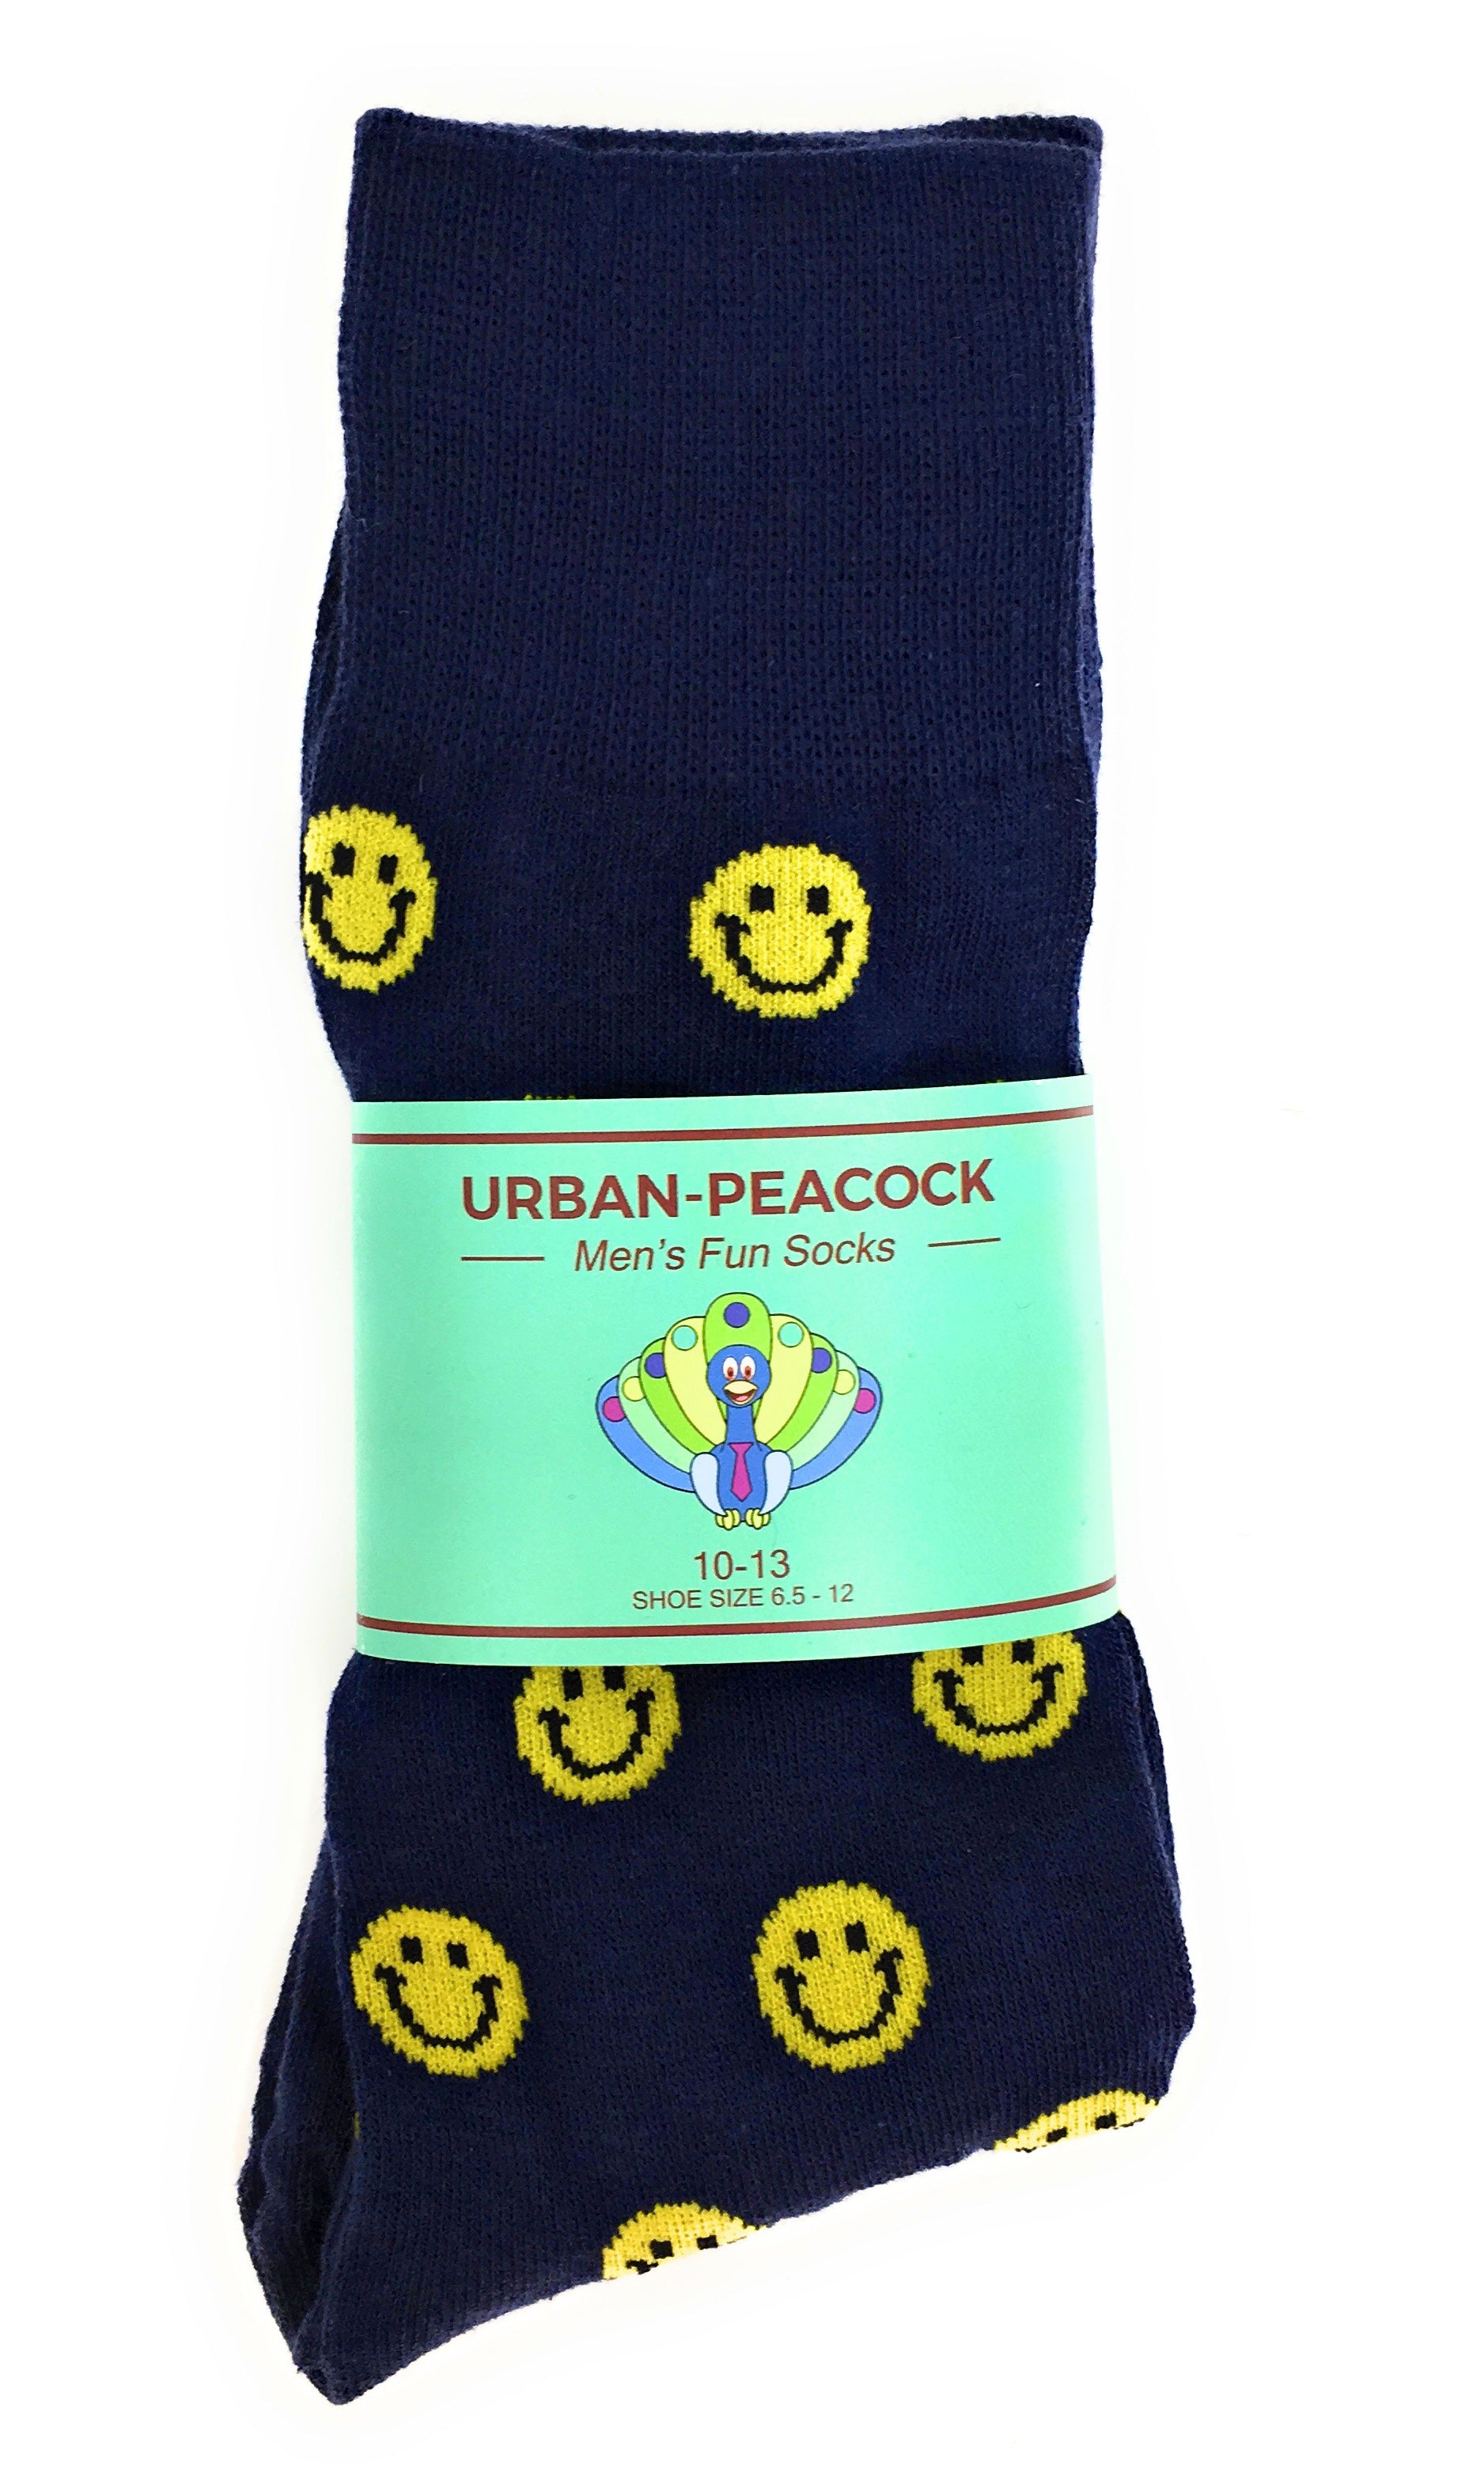 Urban-Peacock Men's Novelty Fun Crew Socks - Smiley Face - Navy